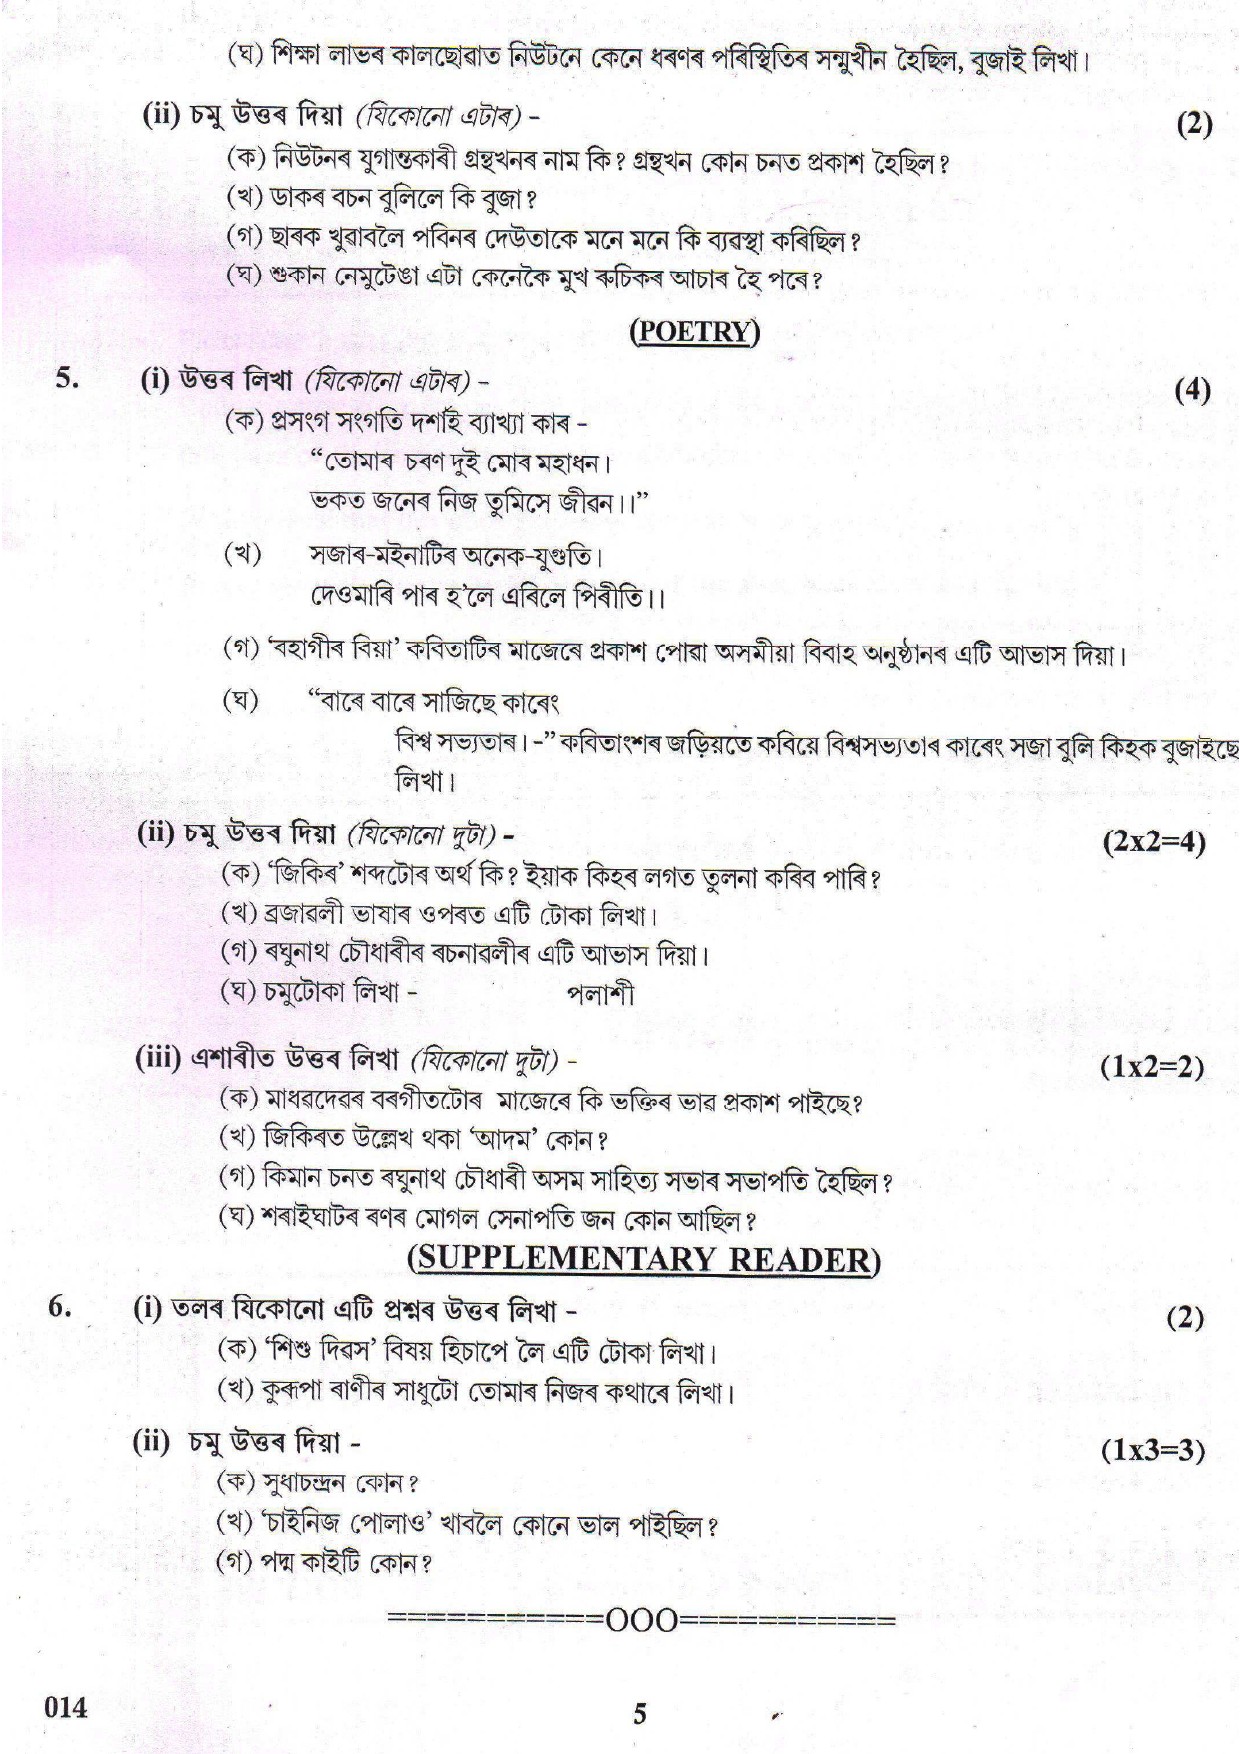 Assamese CBSE Class X Sample Question Paper 2018-19 - Image 5